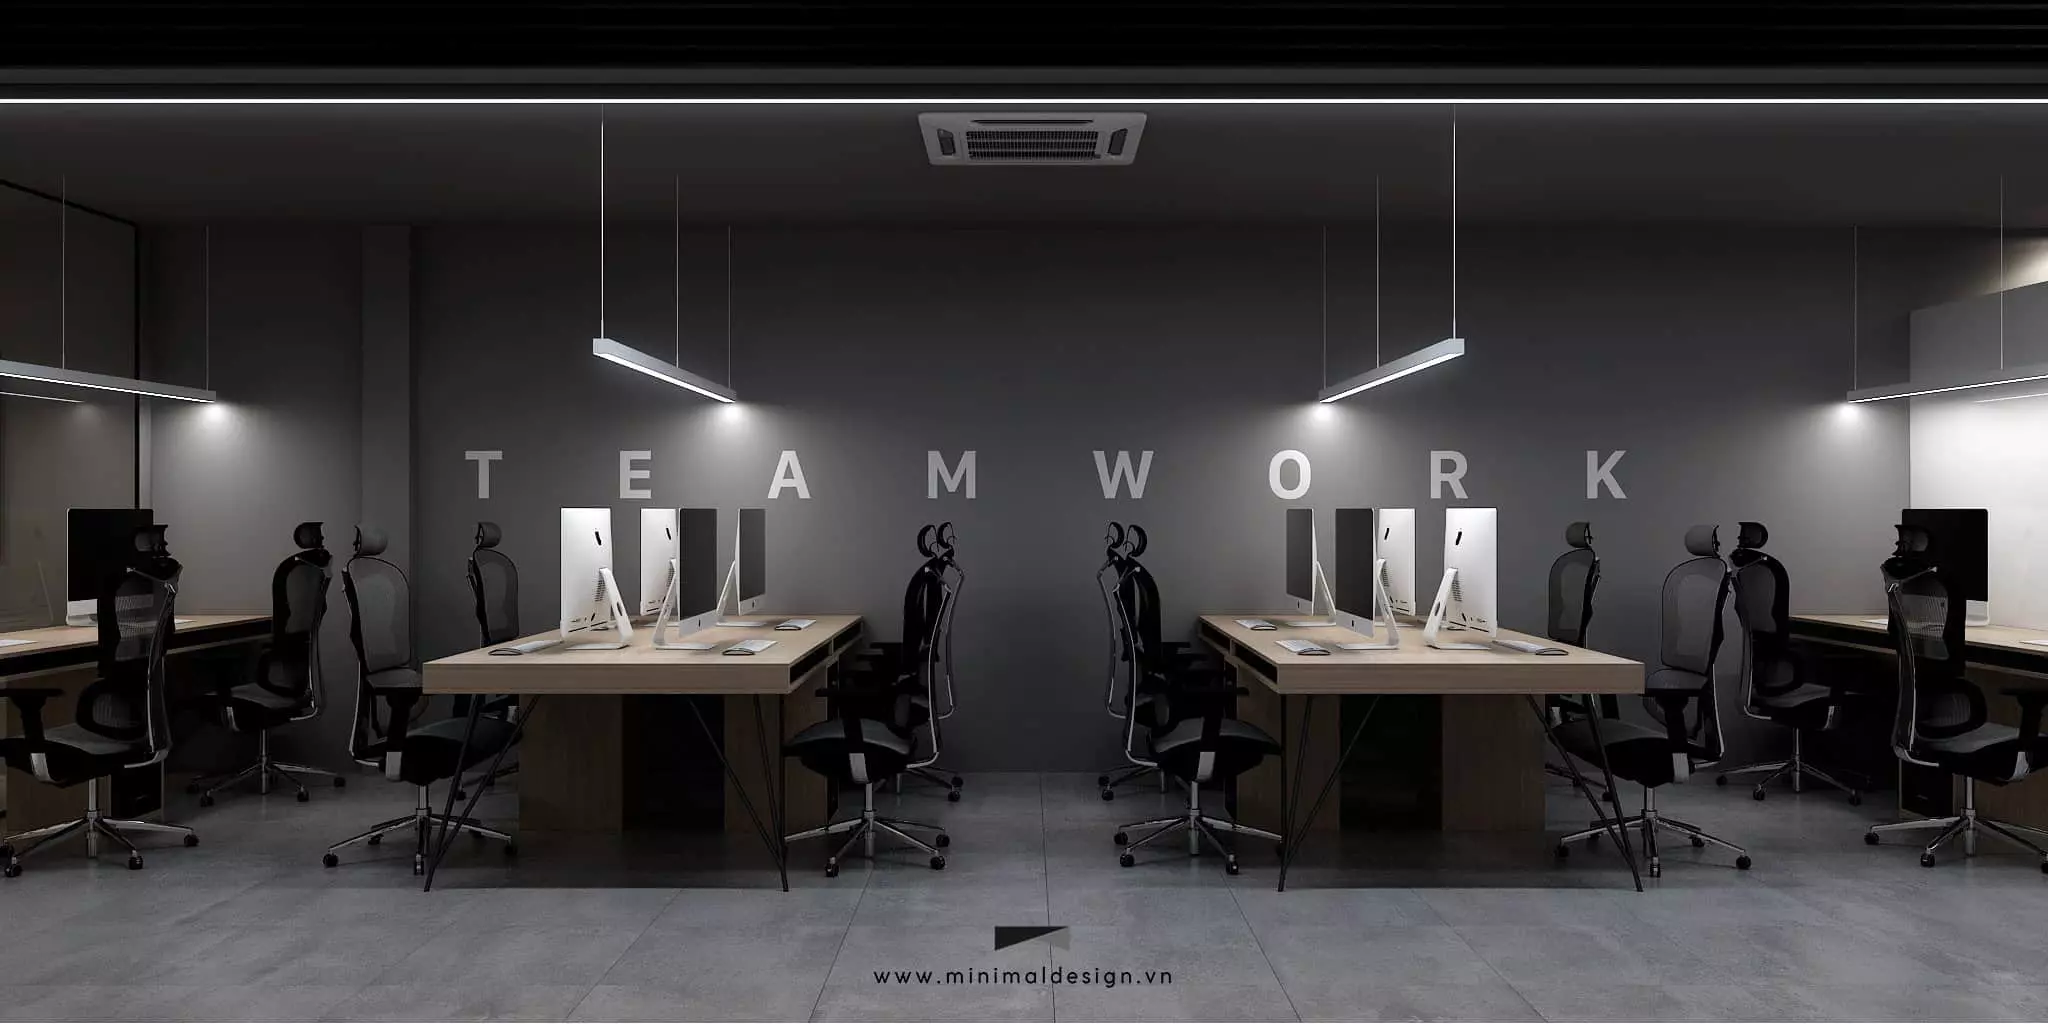 Thiết kế thi công nội thất văn phòng tối giản mang đến một không gian làm việc kiểu mới giúp cân bằng giữa thư giãn và tiện ích, công năng của văn phòng.